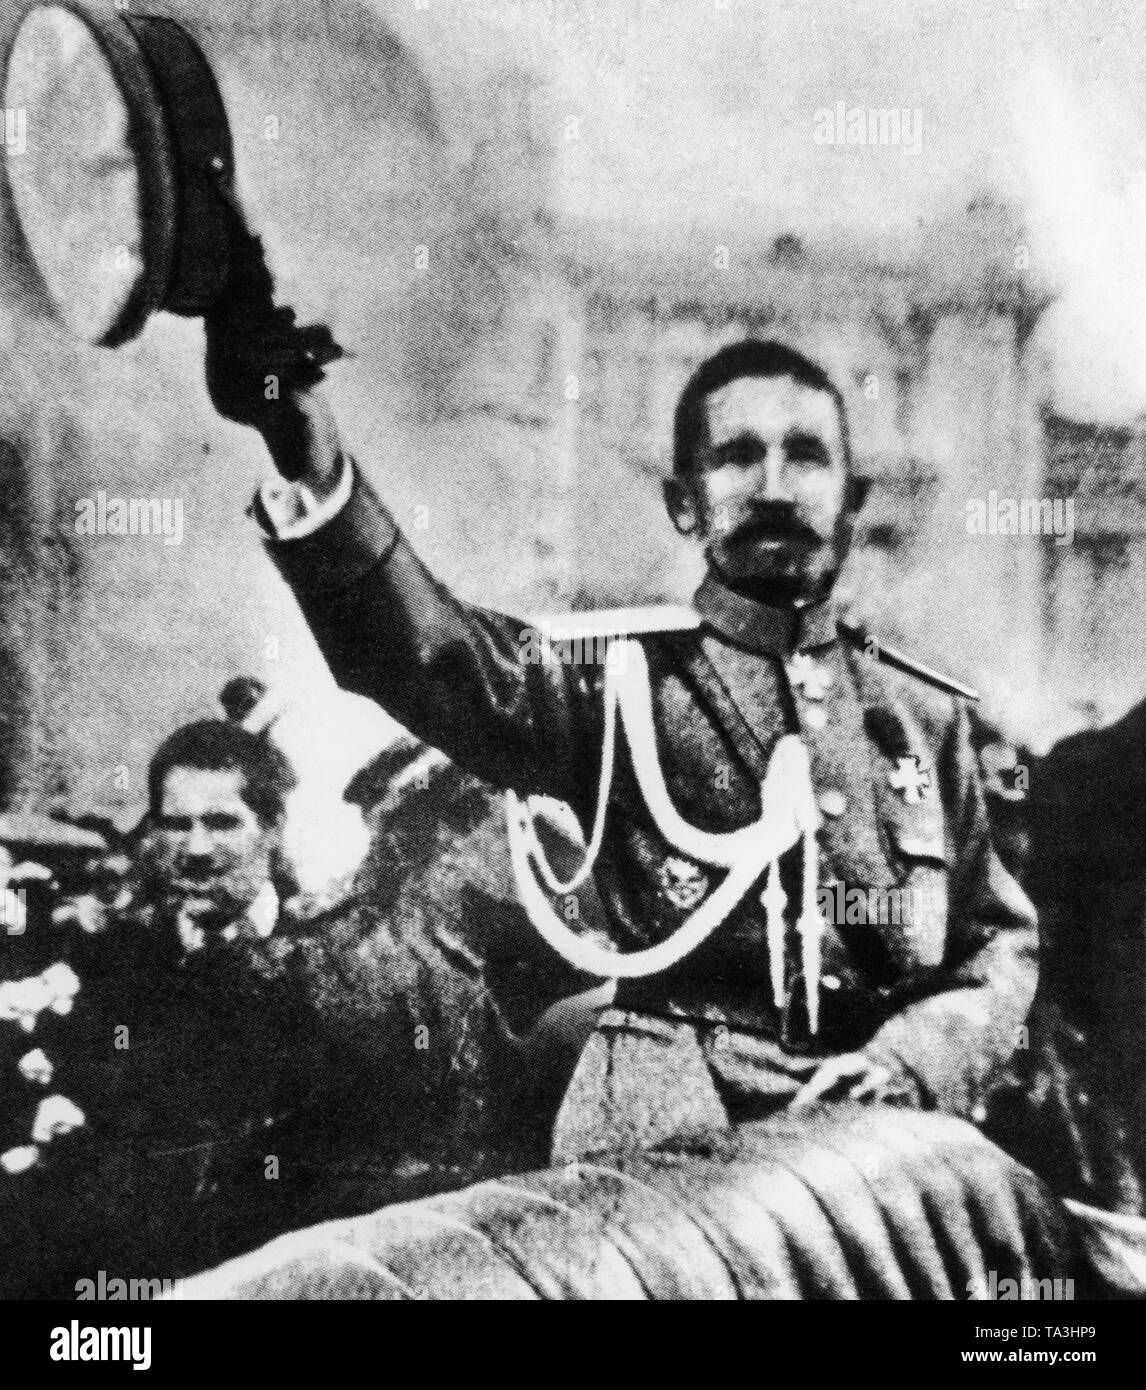 Der letzte Oberbefehlshaber der imperialen russischen Armee, Lavr Georgiyevich Kornilow, vor dem Bolschoi-Theater in Moskau. Kornilow später verpflichtet, einen Putsch gegen die Provisorische Regierung unter Kerenski, sondern ist fehlgeschlagen. Stockfoto